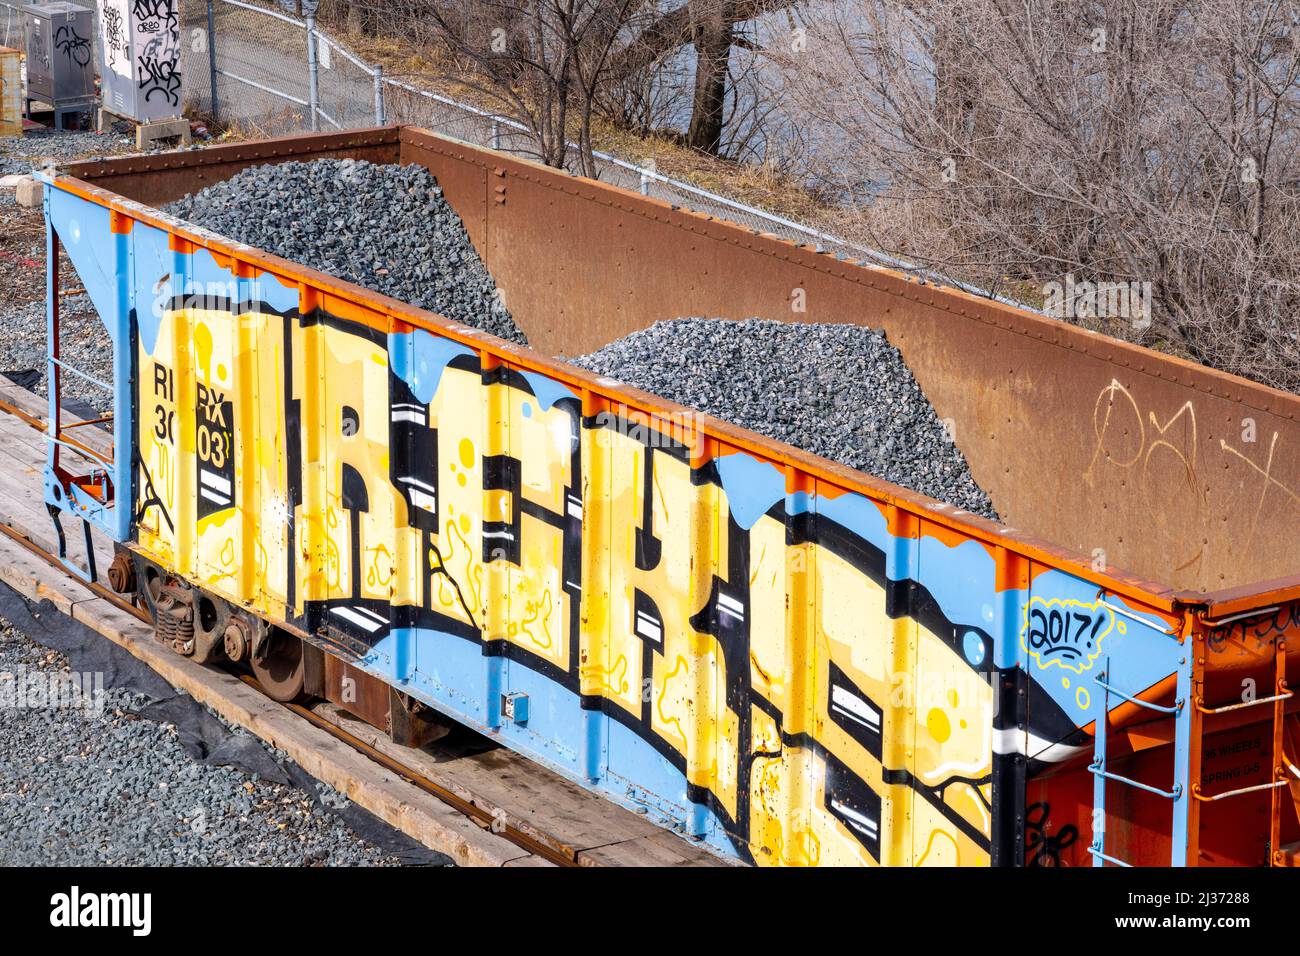 Auf einen mit Kies gefüllten Zug wird eine urbane Graffiti-Kunst gemalt. Das Baumaterial und die Fahrzeuge sind im Queen St. East-Viertel stationär. Stockfoto